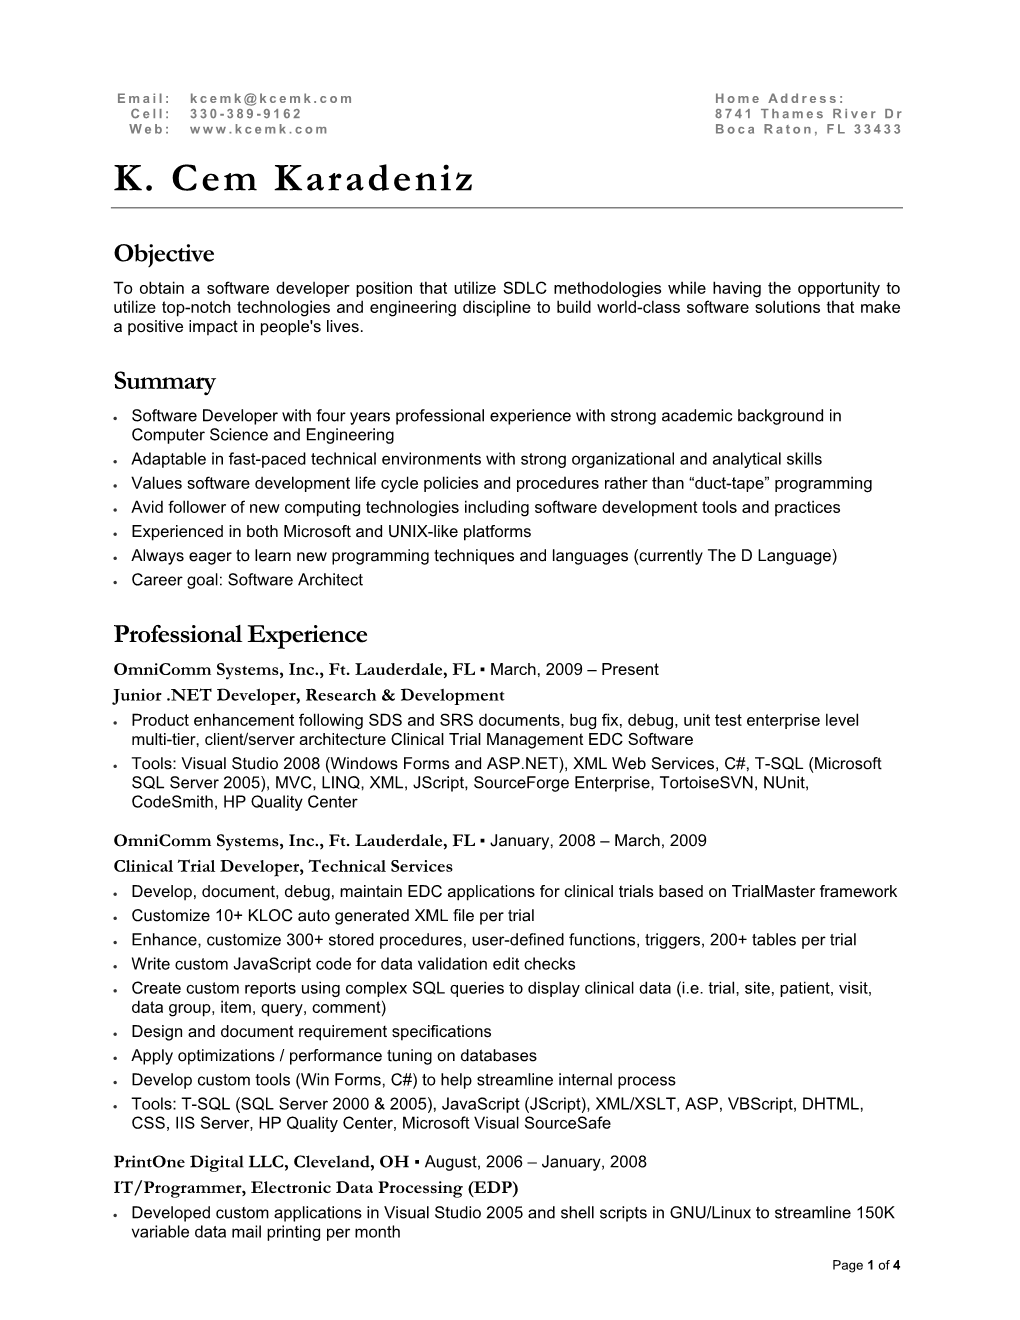 Resume of K. Cem Karadeniz